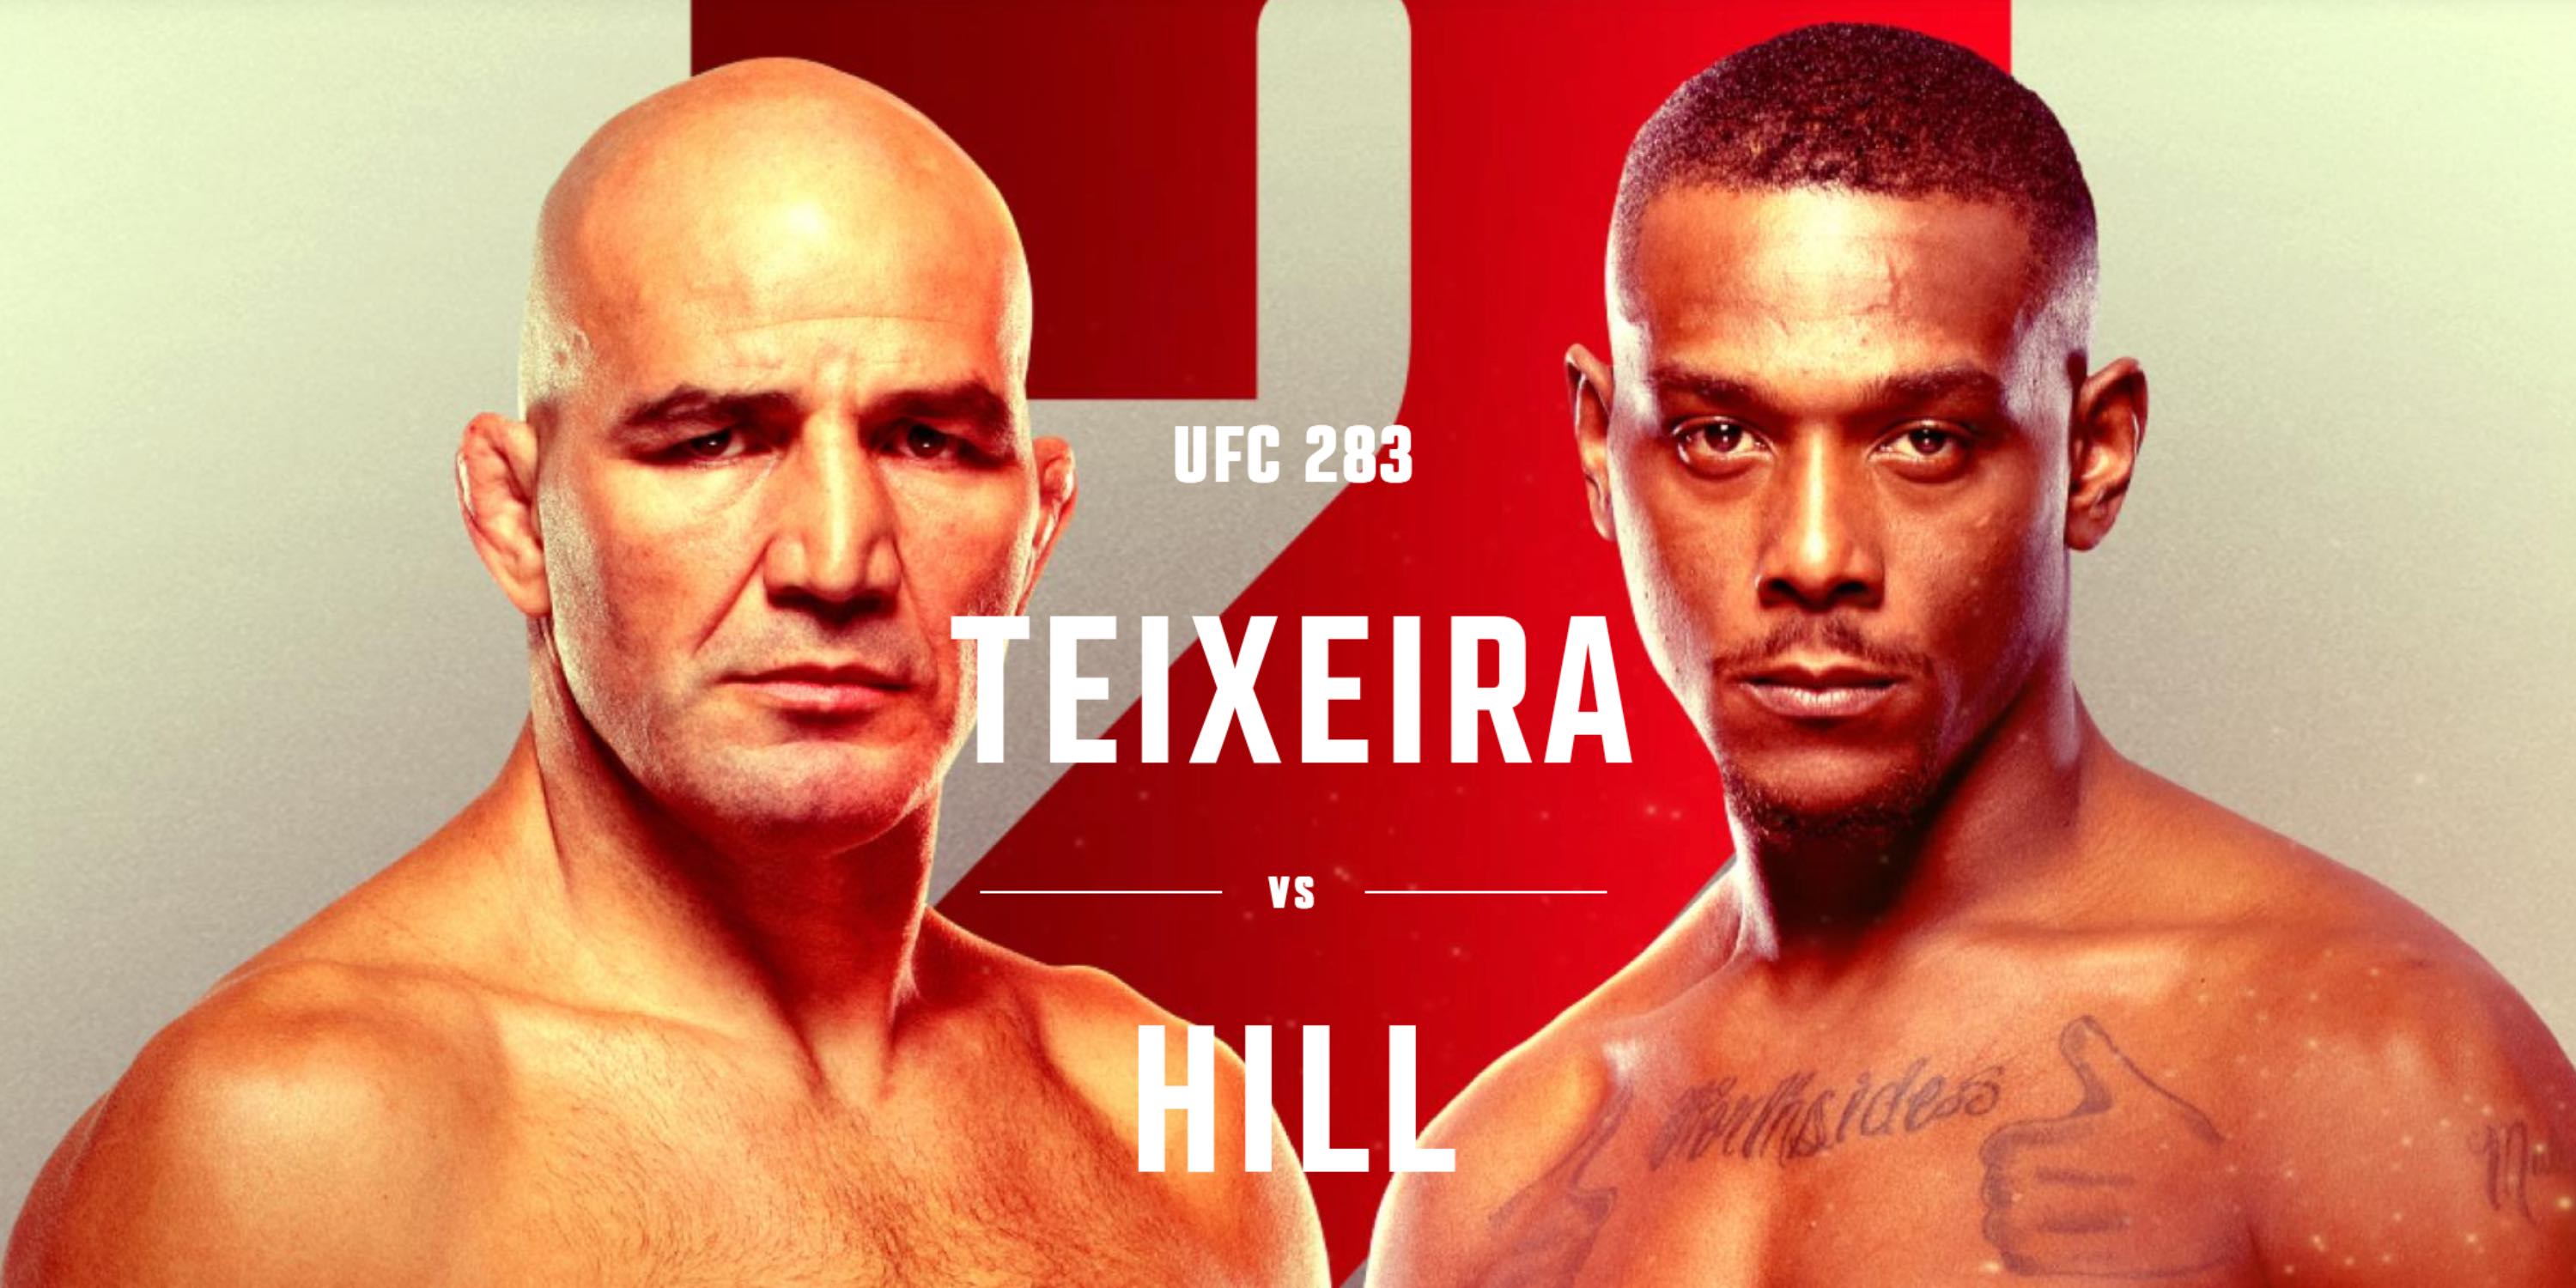 How to watch UFC 283 Teixeira vs Hill